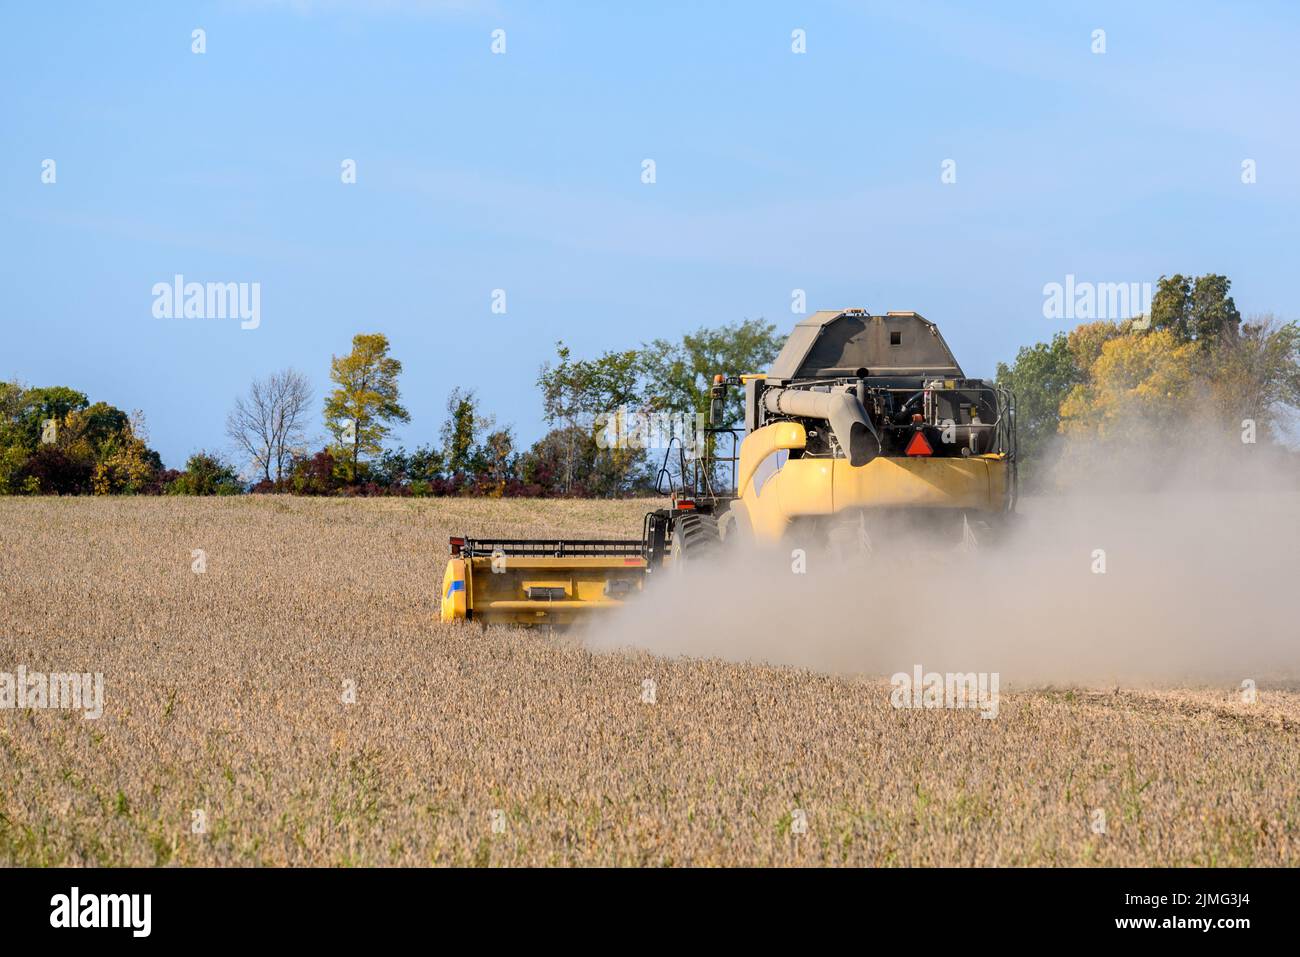 Vista posterior de una cosechadora en un campo de trigo bajo el cielo azul en otoño. Foto de stock